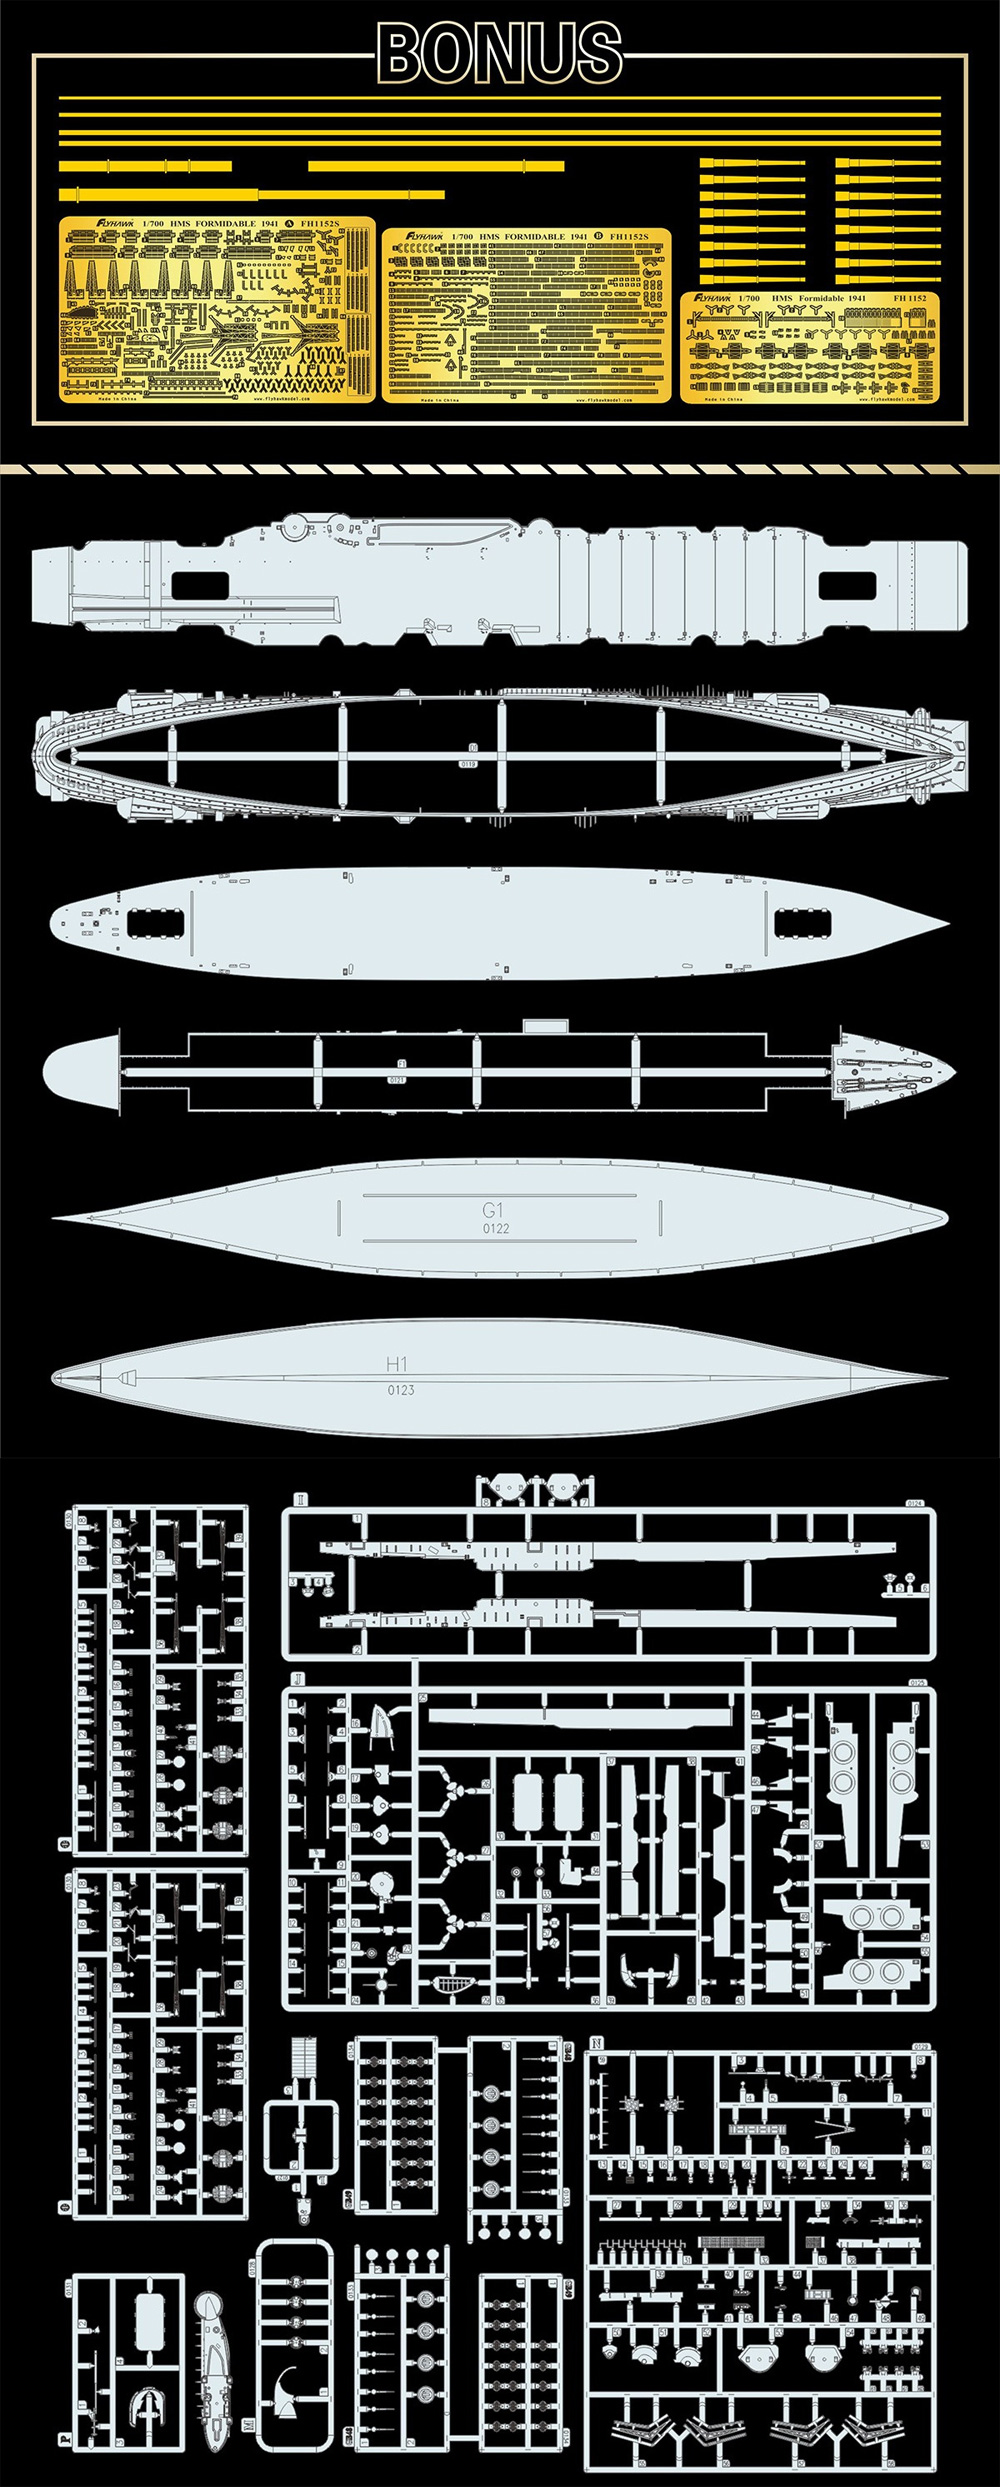 イギリス海軍 航空母艦 フォーミダブル 1941 豪華版 プラモデル (フライホーク 1/700 艦船 No.FH1152S) 商品画像_2